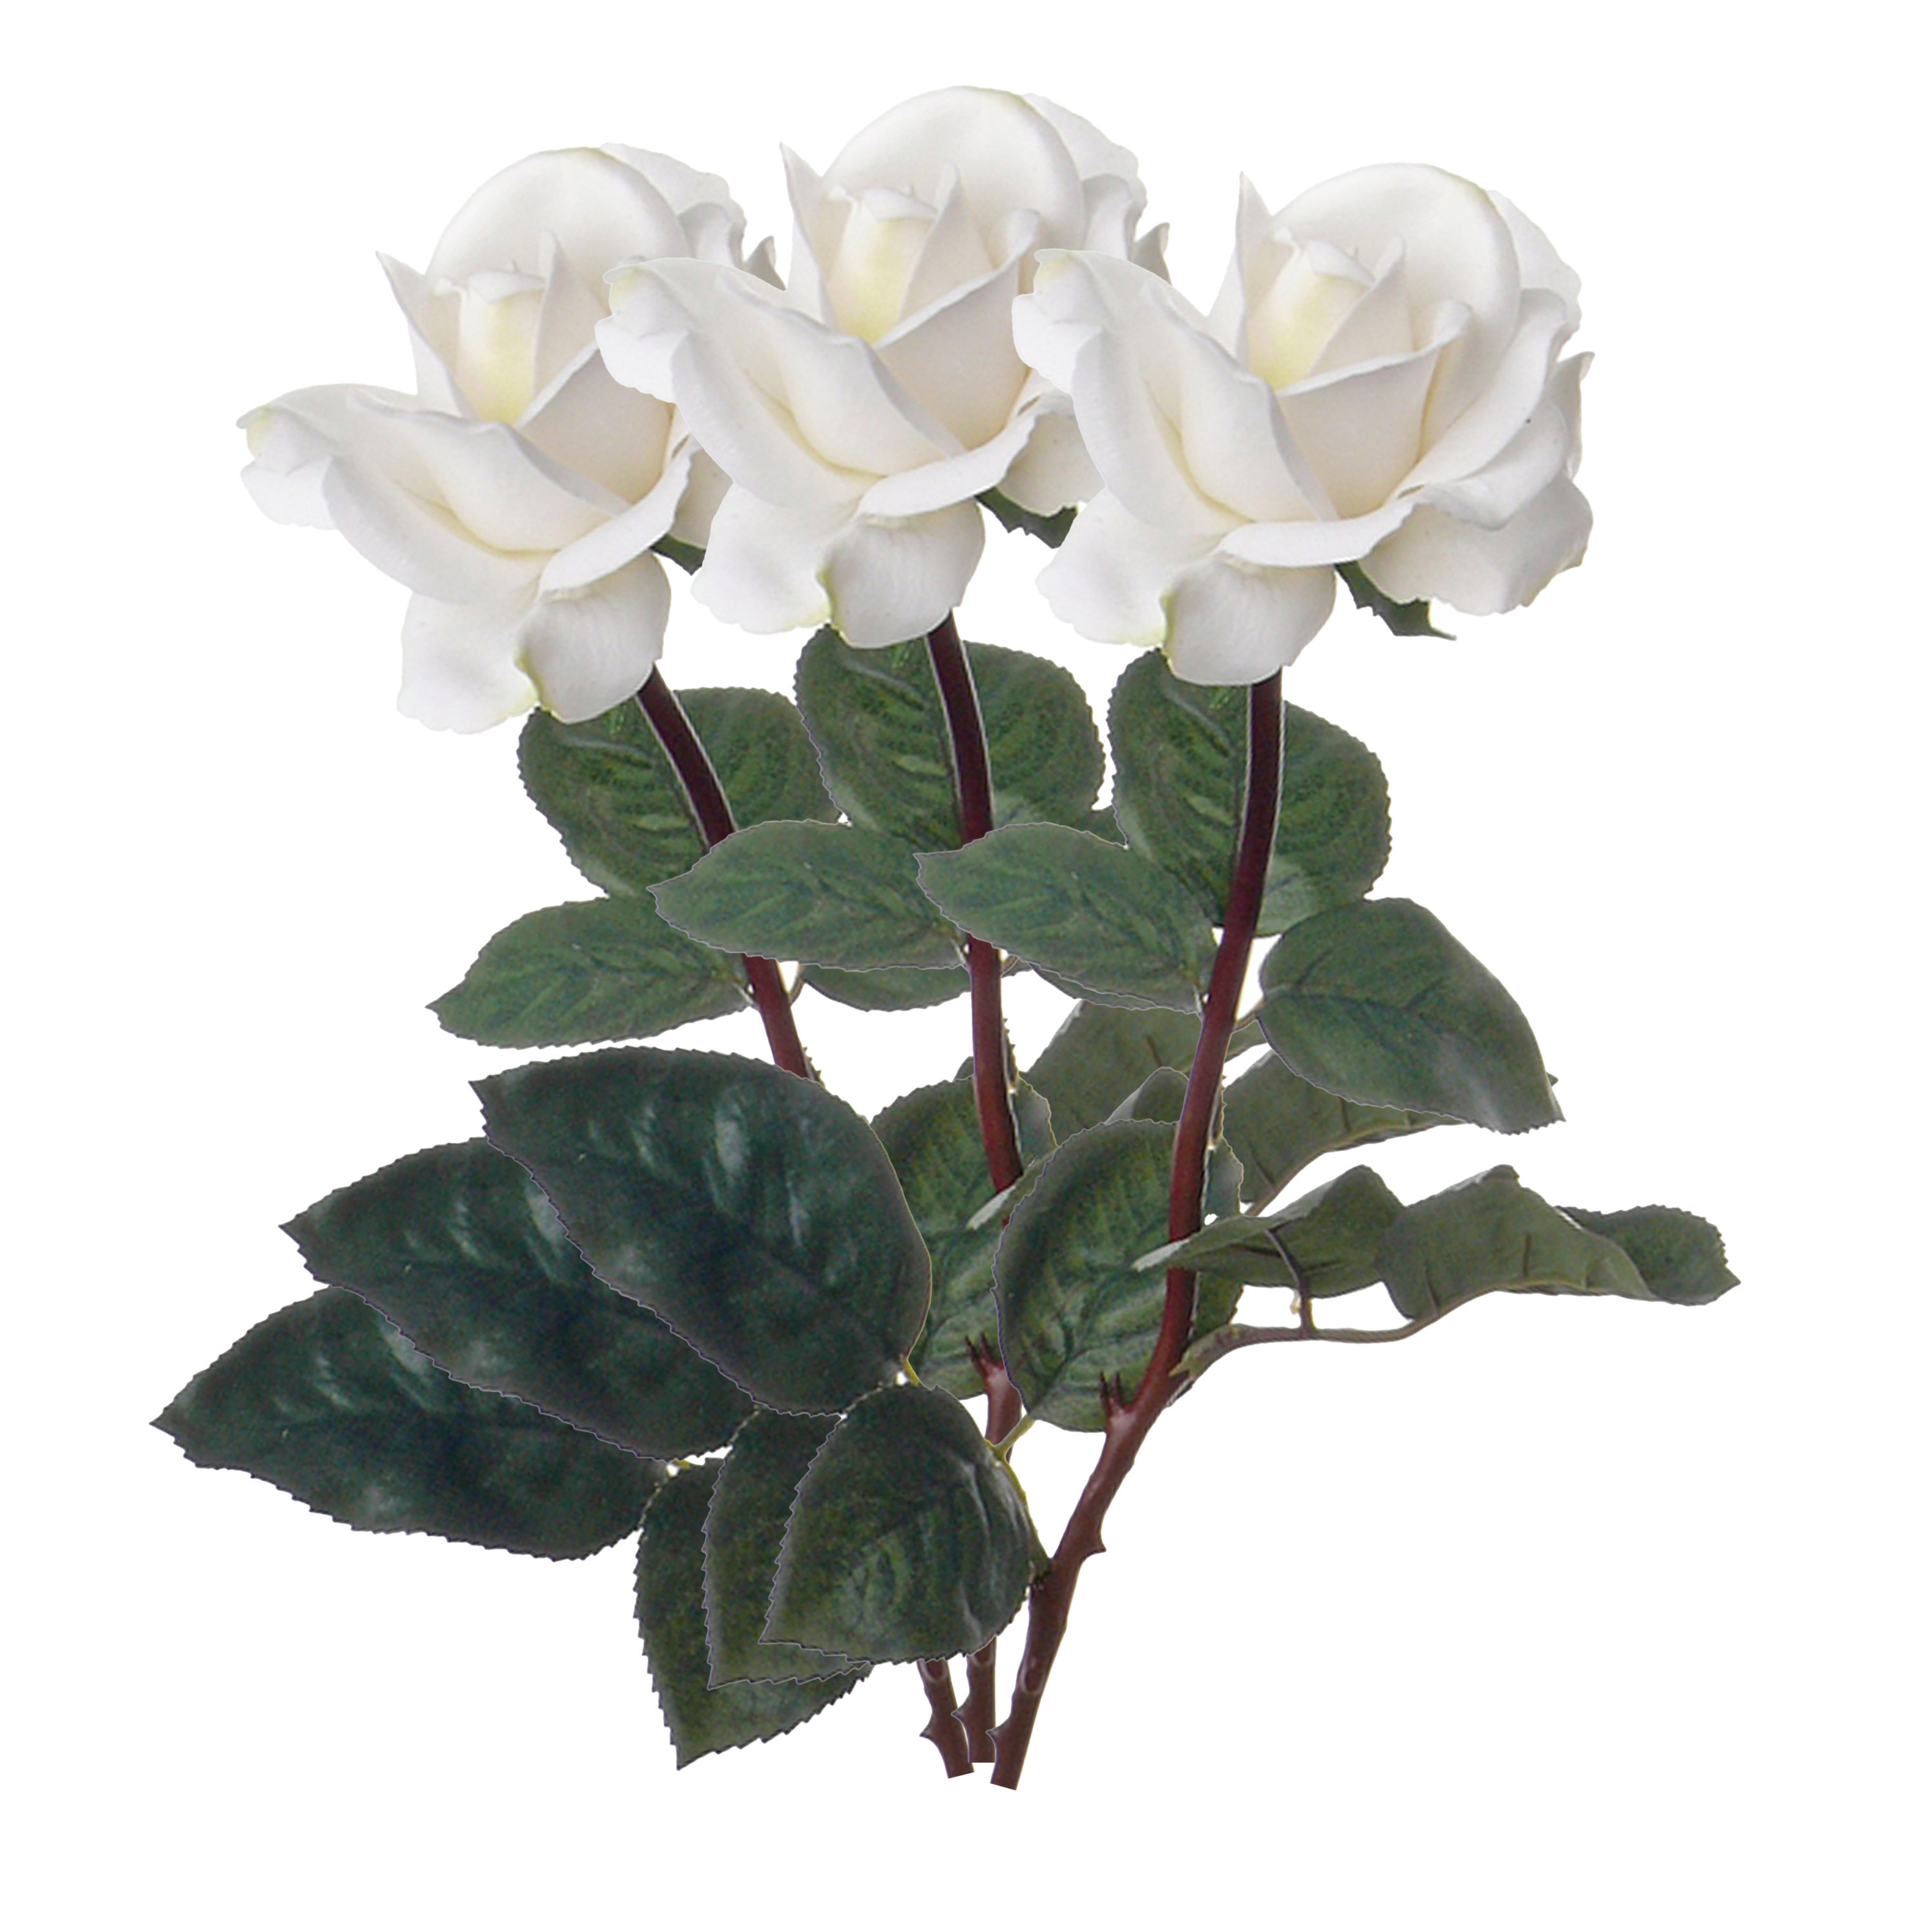 Afbeelding van Kunstbloem roos Caroline - 3x - wit - 70 cm - zijde - kunststof steel - decoratie bloemen